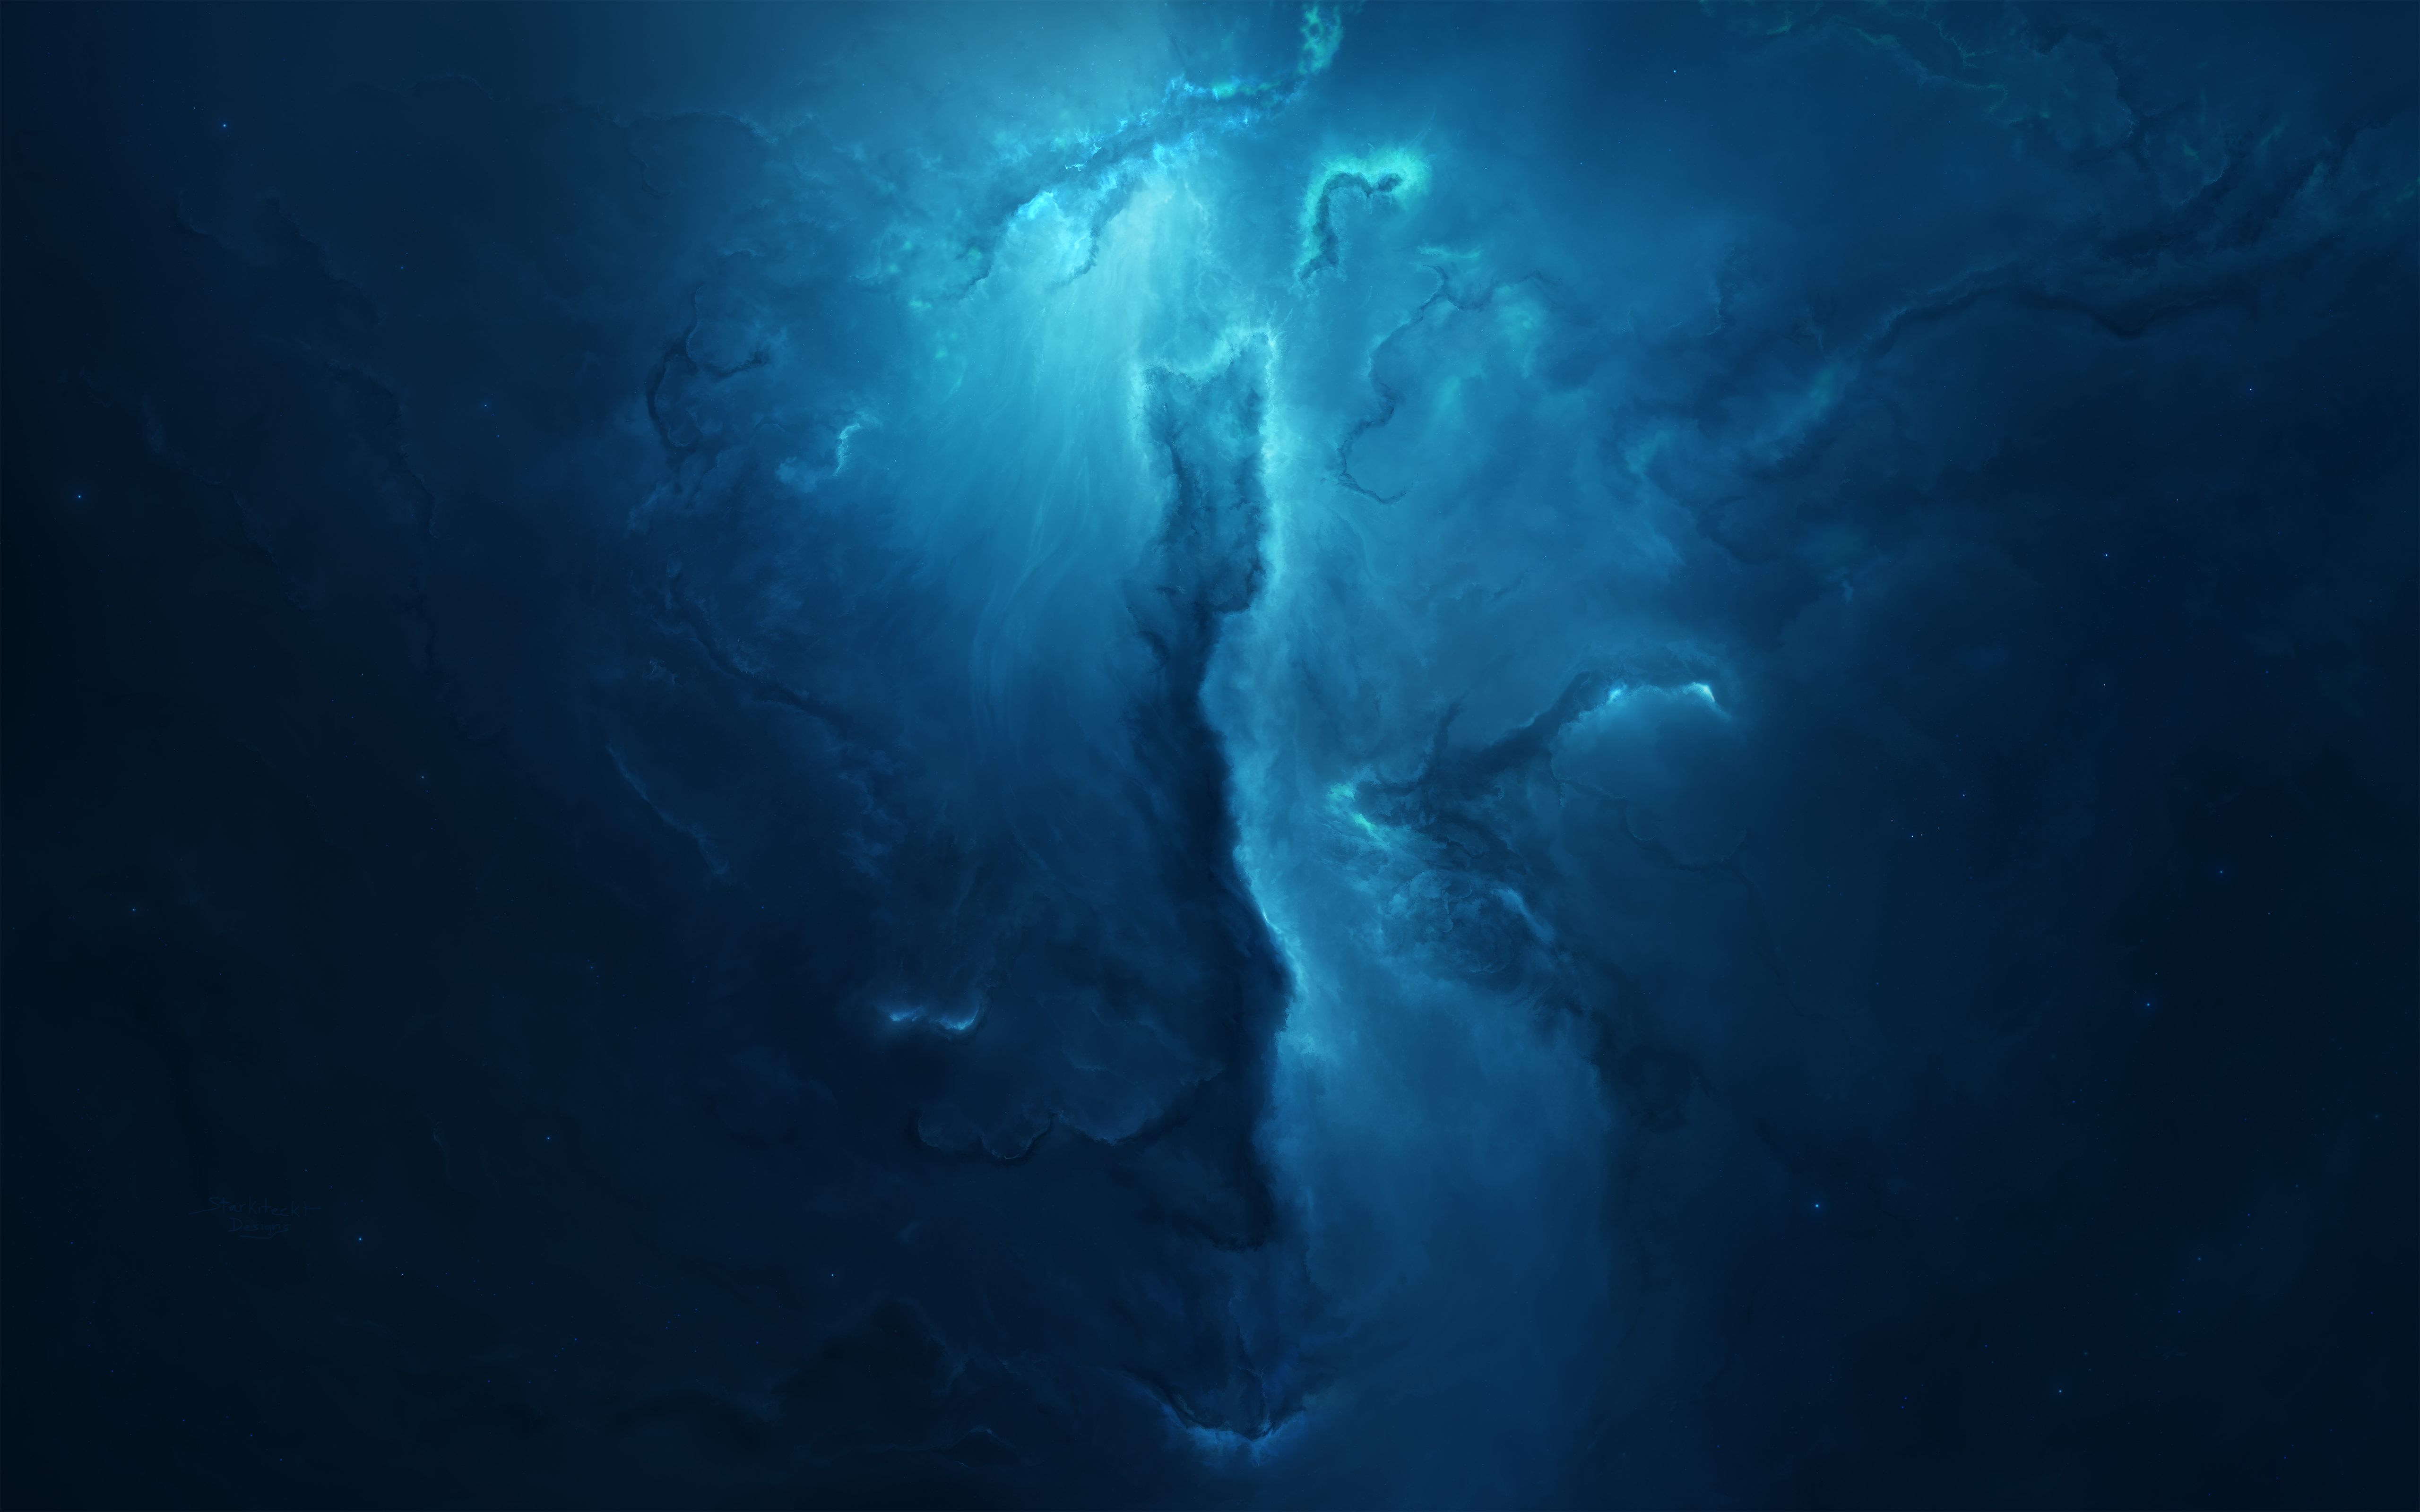 Atlantis Nebula #12 by Starkiteckt